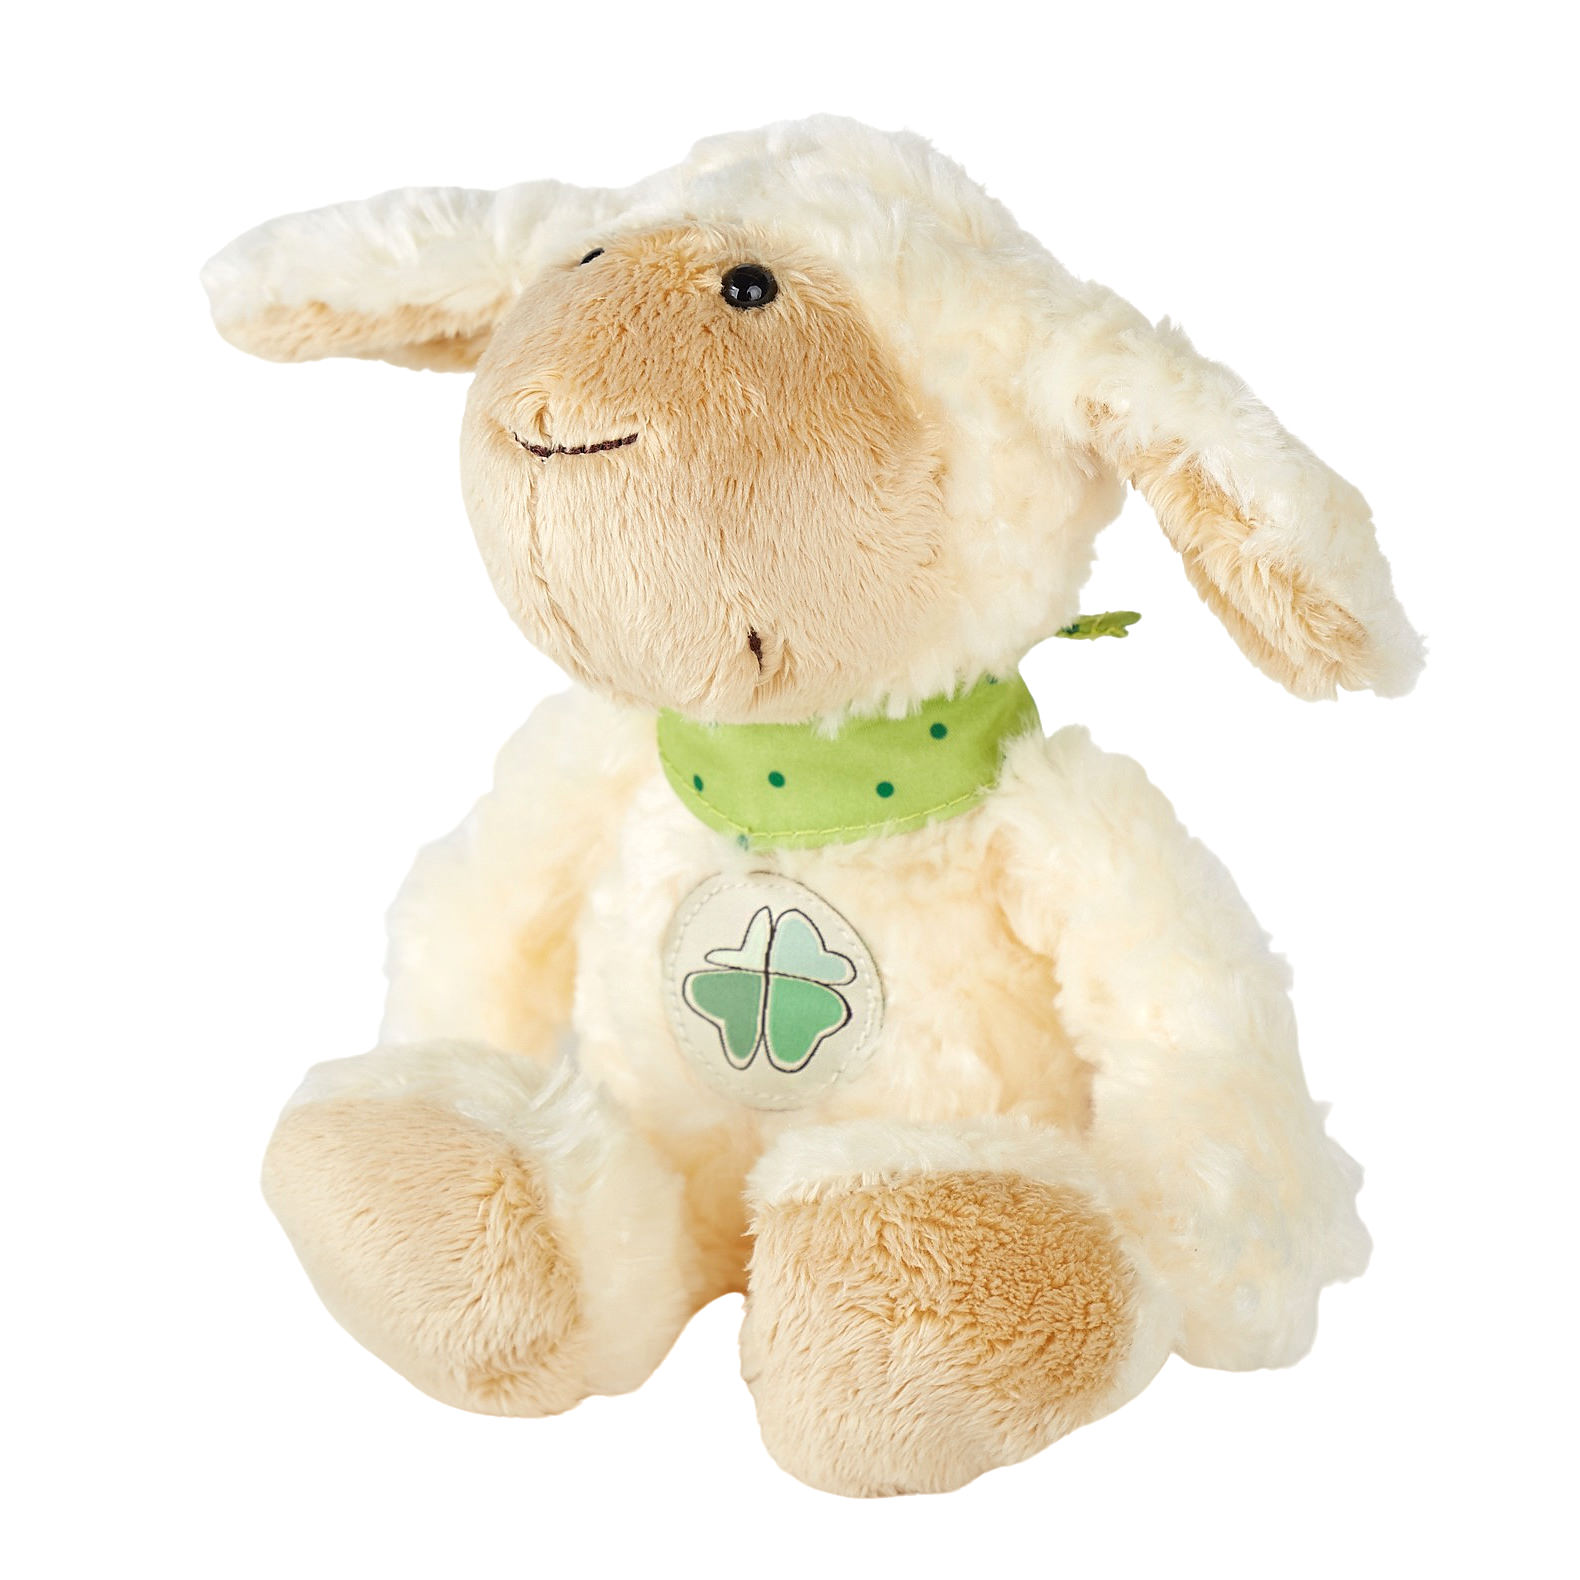 Fluffy plush sheep, Care-for-Rare health foundation